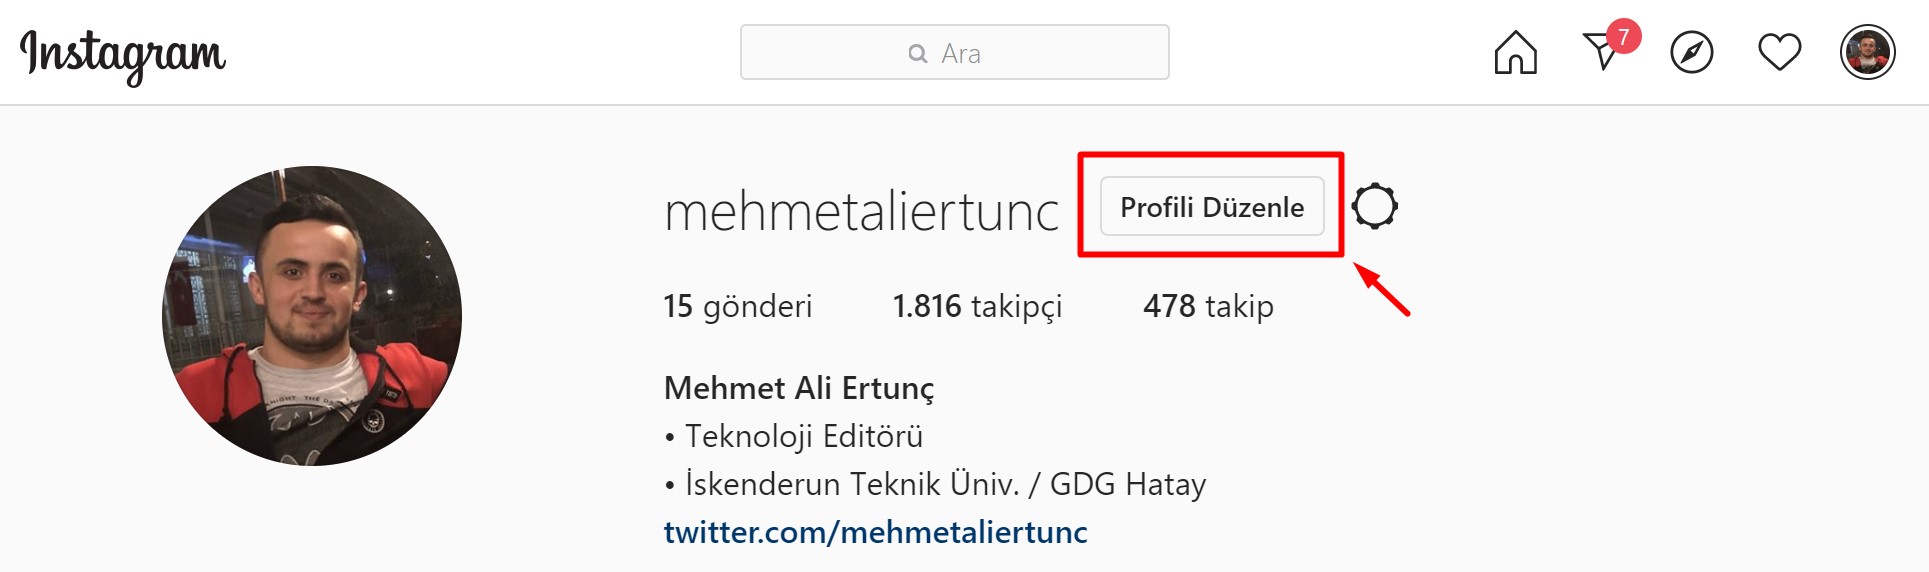 Instagram Hesabı Freeze Link 2020 - Instagram Freeze